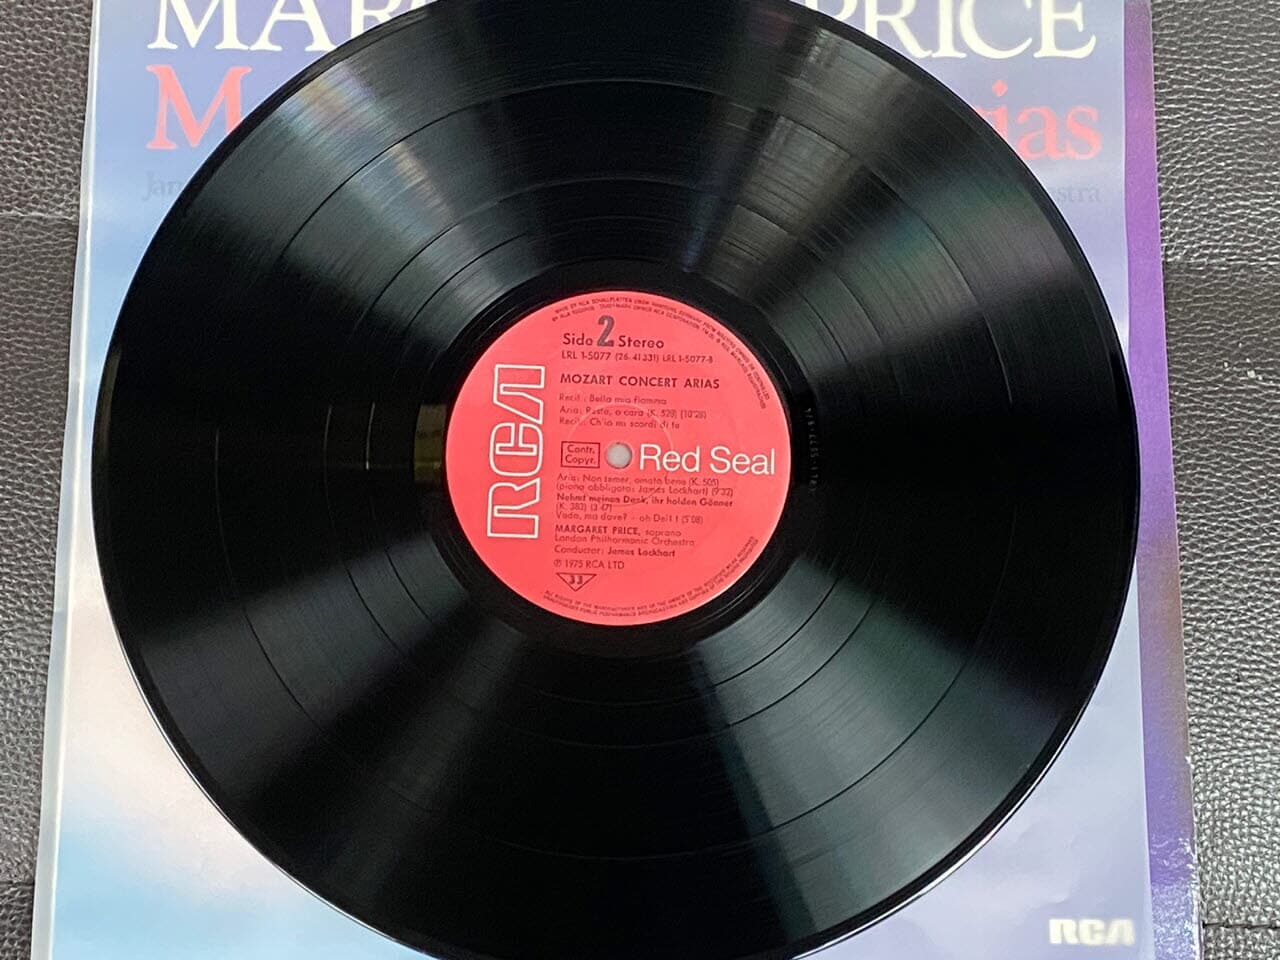 [LP] 마거릿 프라이스 - Margaret Price - Mozart Concert Arias LP [독일반]